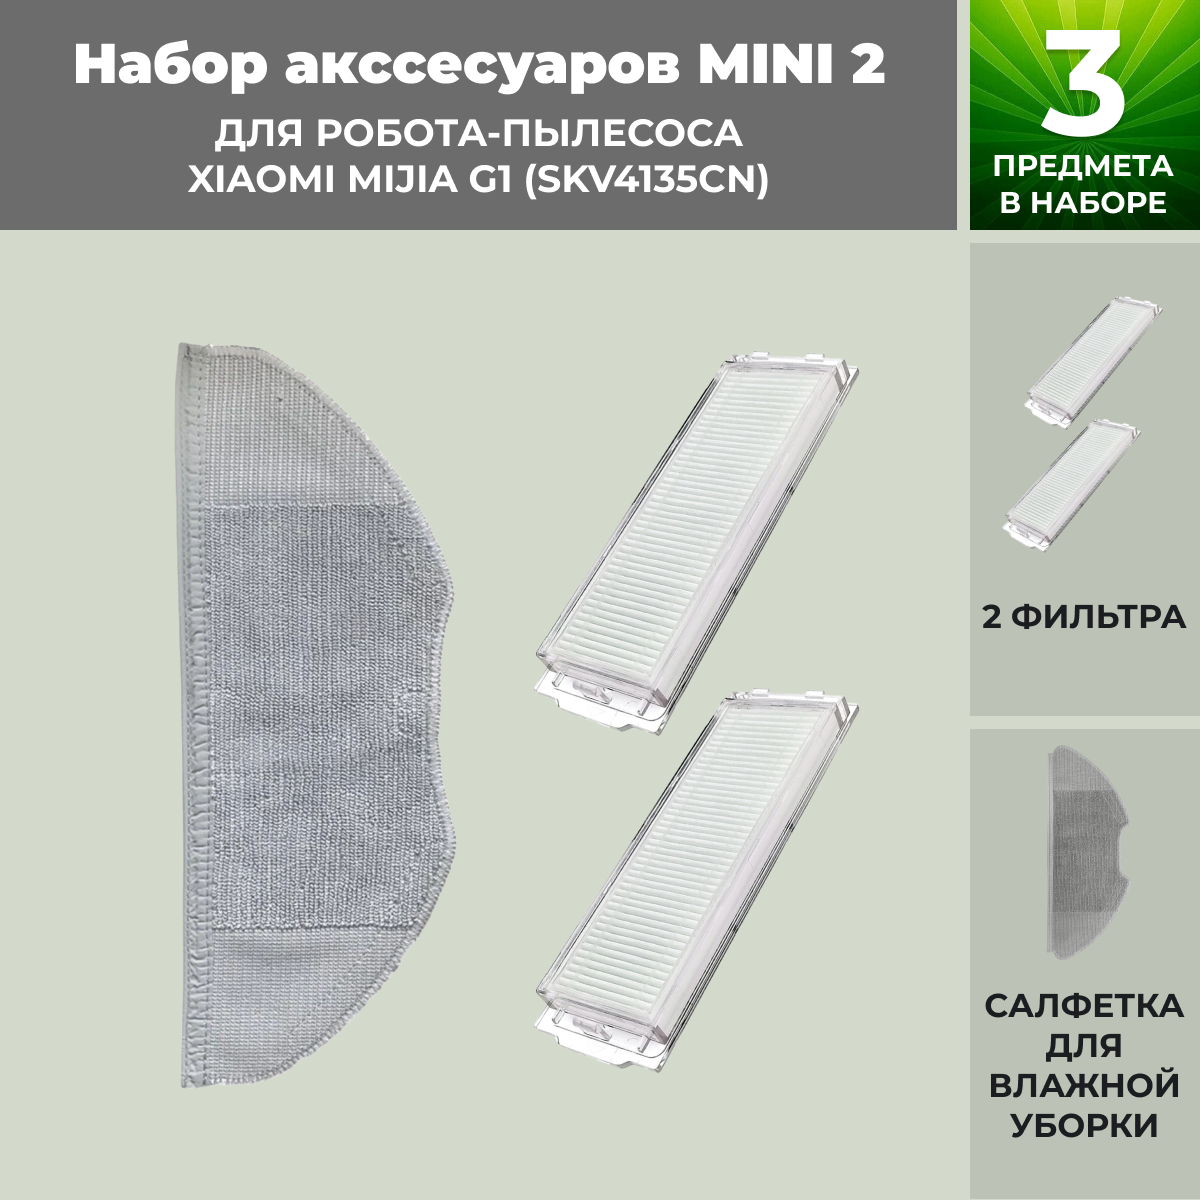 Набор аксессуаров Mini 2 для робота-пылесоса Xiaomi Mijia G1 (SKV4135CN) 558824